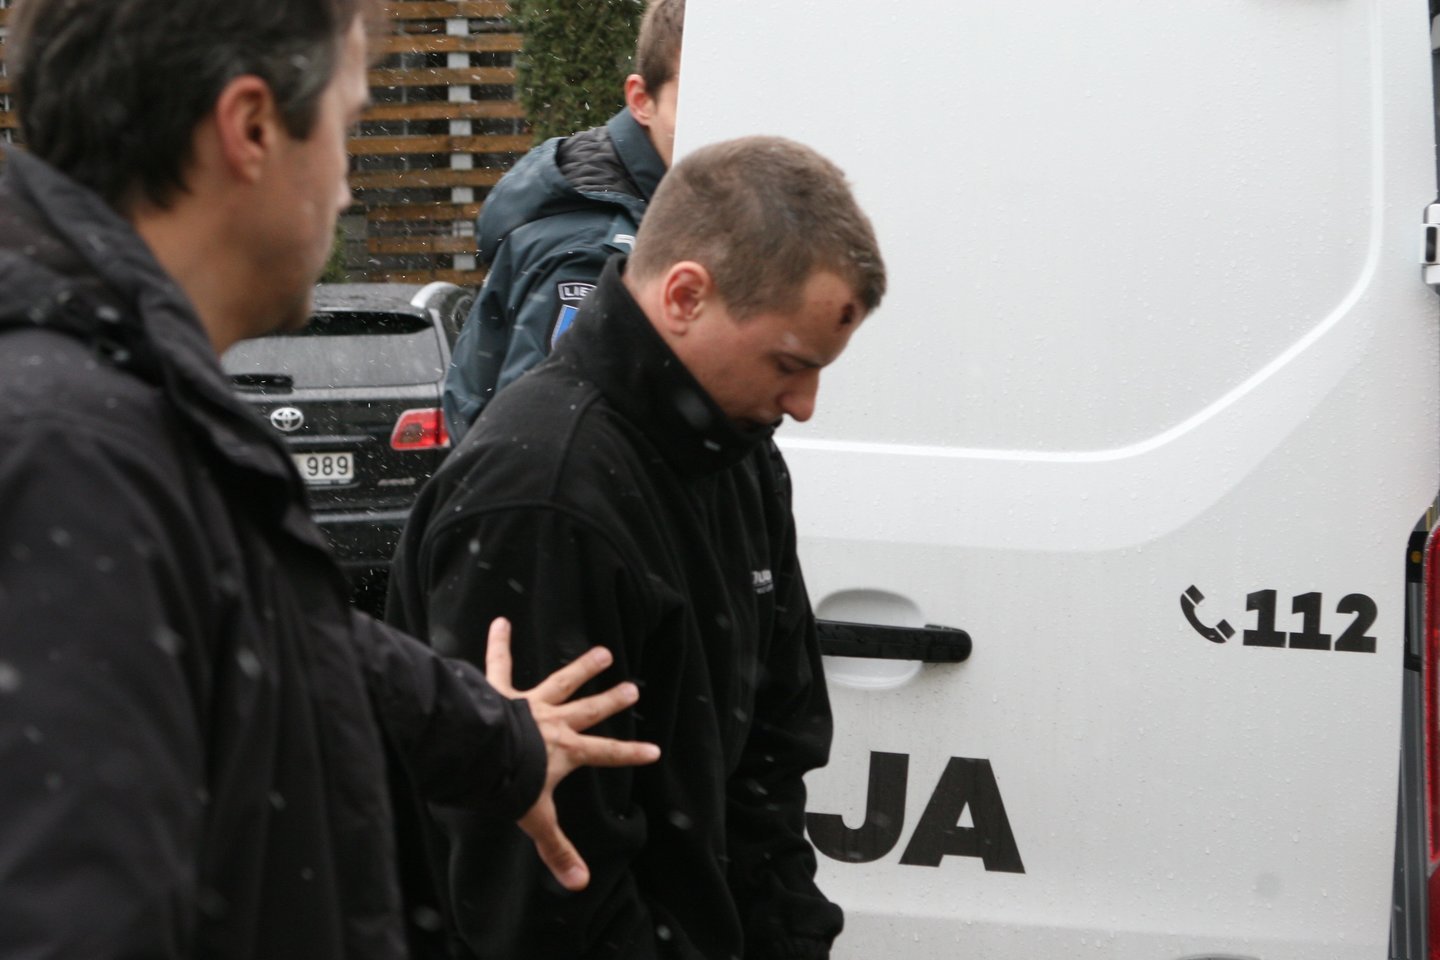  Marijampolės teismas avarijos kaltininką A.Lankelaitį suėmė mėnesiui.<br> L.Juodzevičienės nuotr.